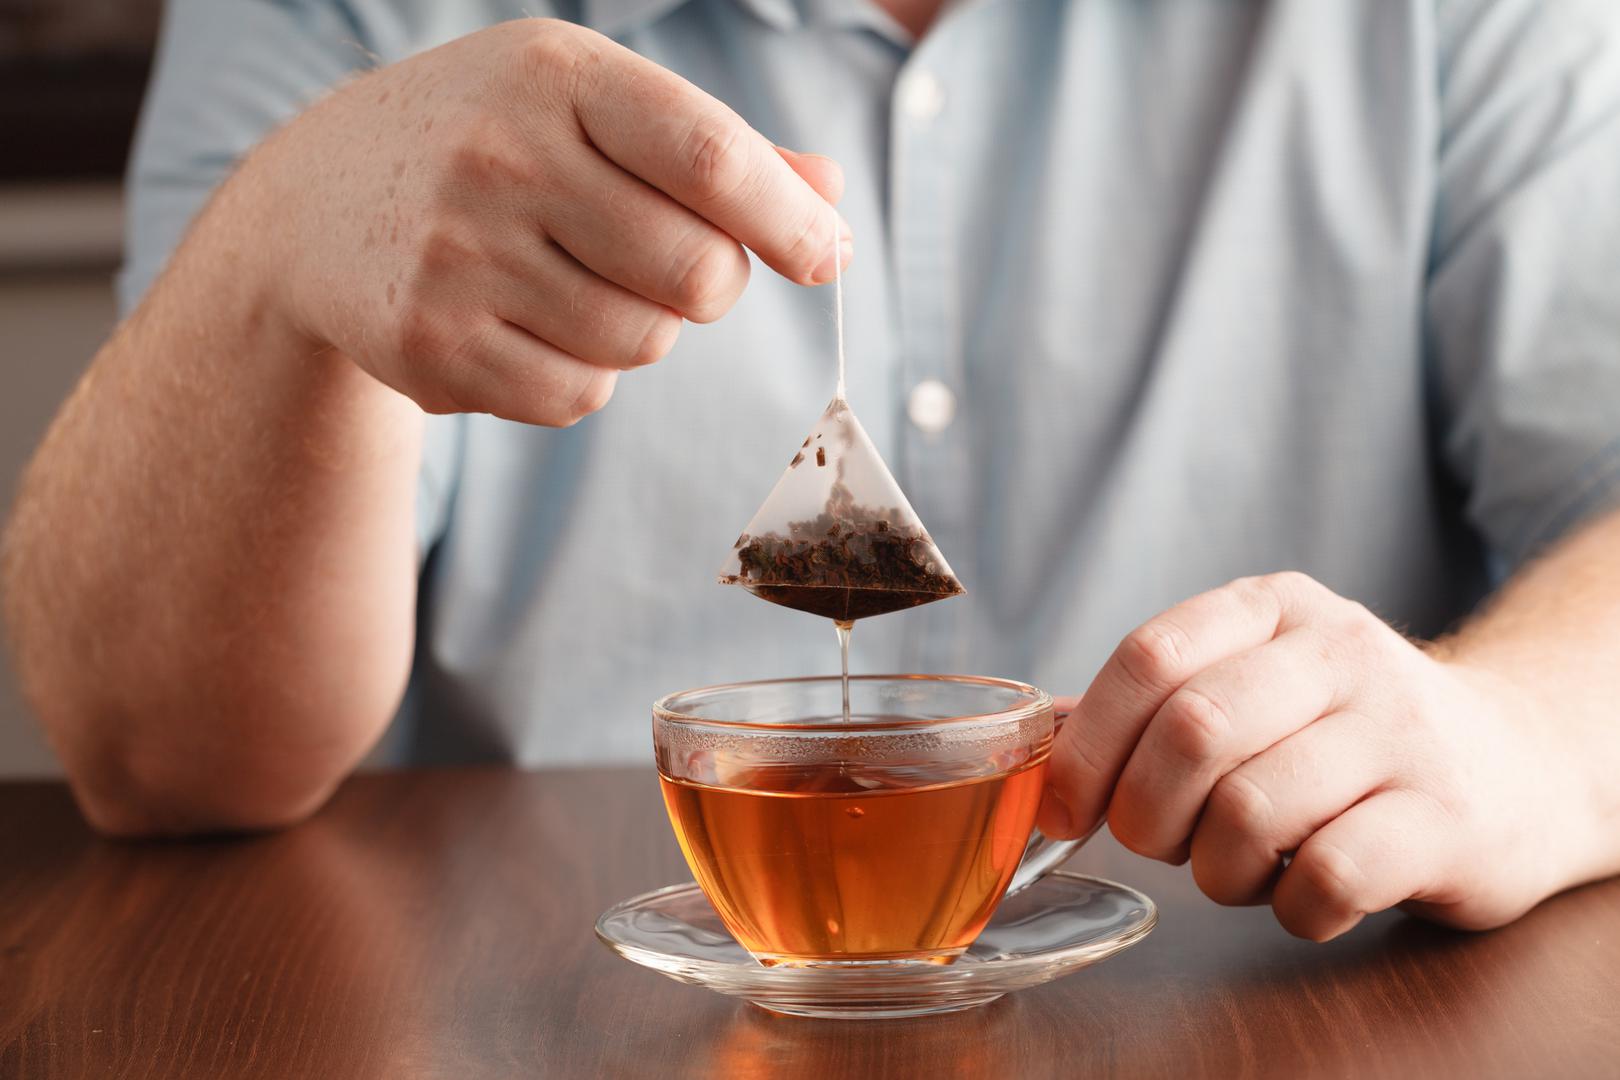 Posljednje vrijeme proizvođači čaja počeli su ga pakirati u vrećice bez metalne spajalice na vrhu. Upravo ta spajalica može nanijeti našem zdravlju znatno više štete nego dobrobiti koje nam pruža šalica čaja. 